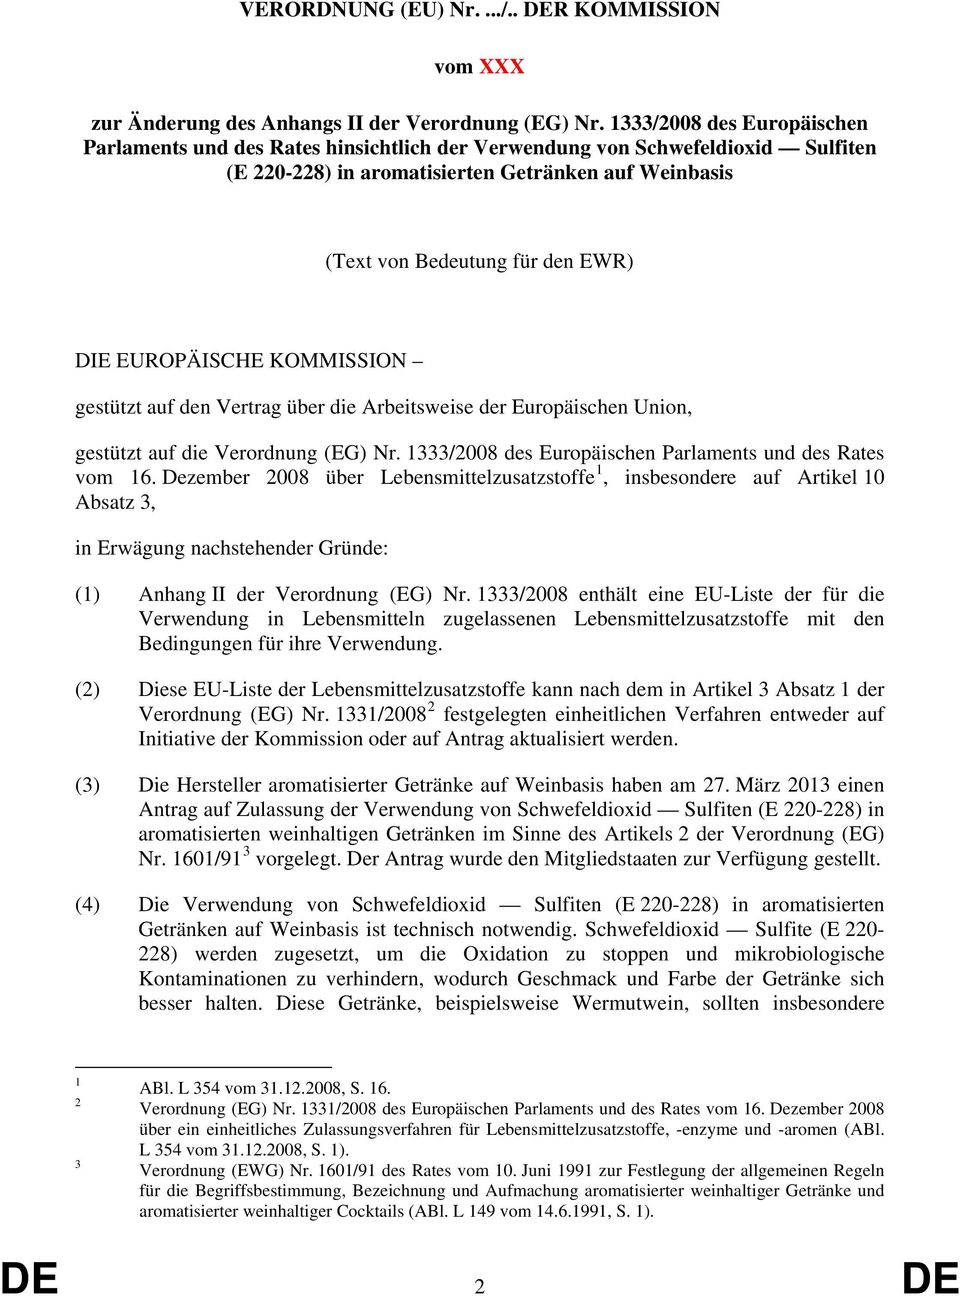 EUROPÄISCHE KOMMISSION gestützt auf den Vertrag über die Arbeitsweise der Europäischen Union, gestützt auf die Verordnung (EG) Nr. 1333/2008 des Europäischen Parlaments und des Rates vom 16.